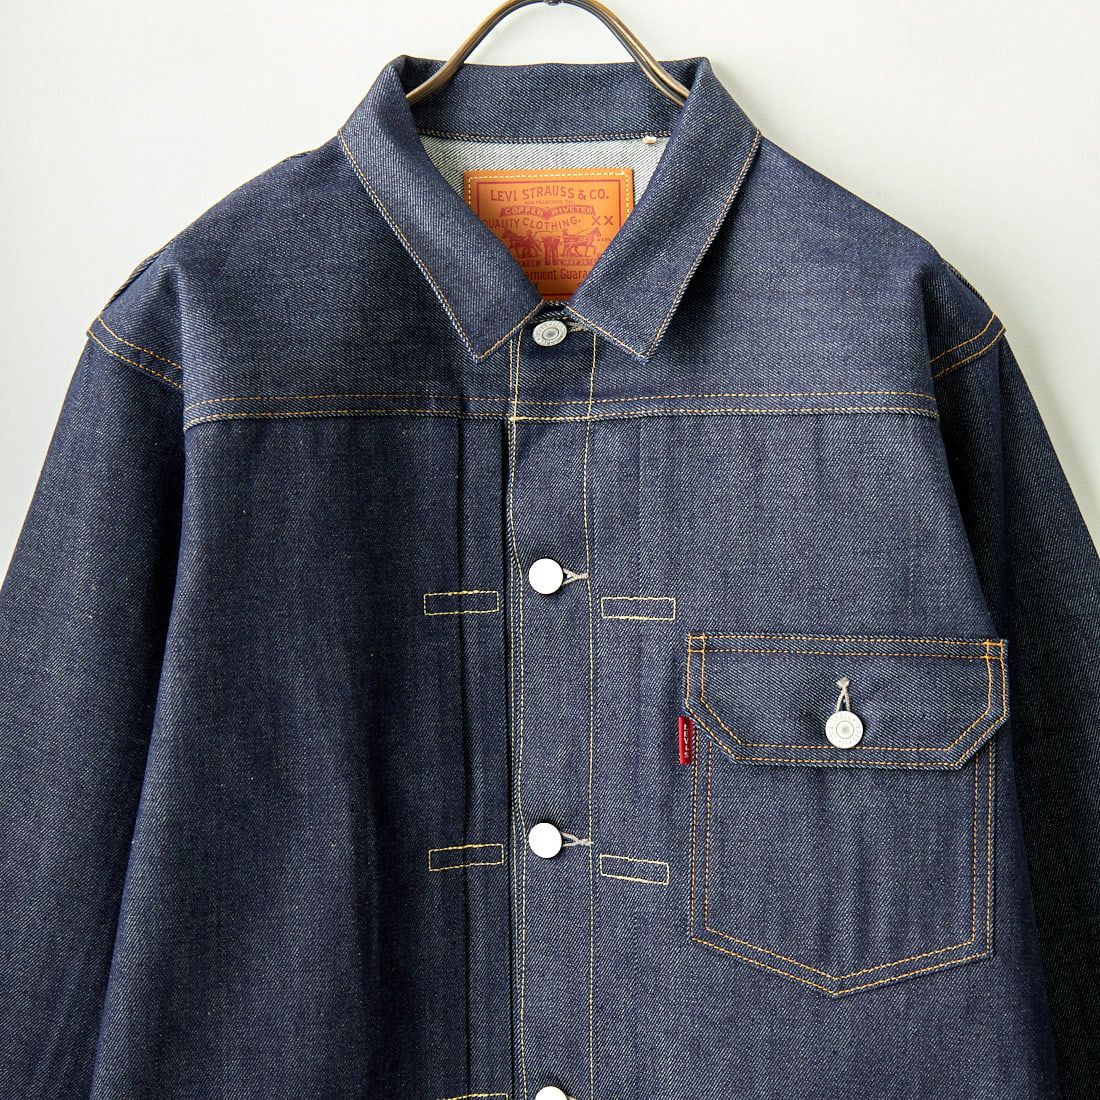 LEVIS Vintage Clothing [リーバイス ヴィンテージ クロージング] 1936モデル TYPE1ジャケット [70506-00] 28 RIGID